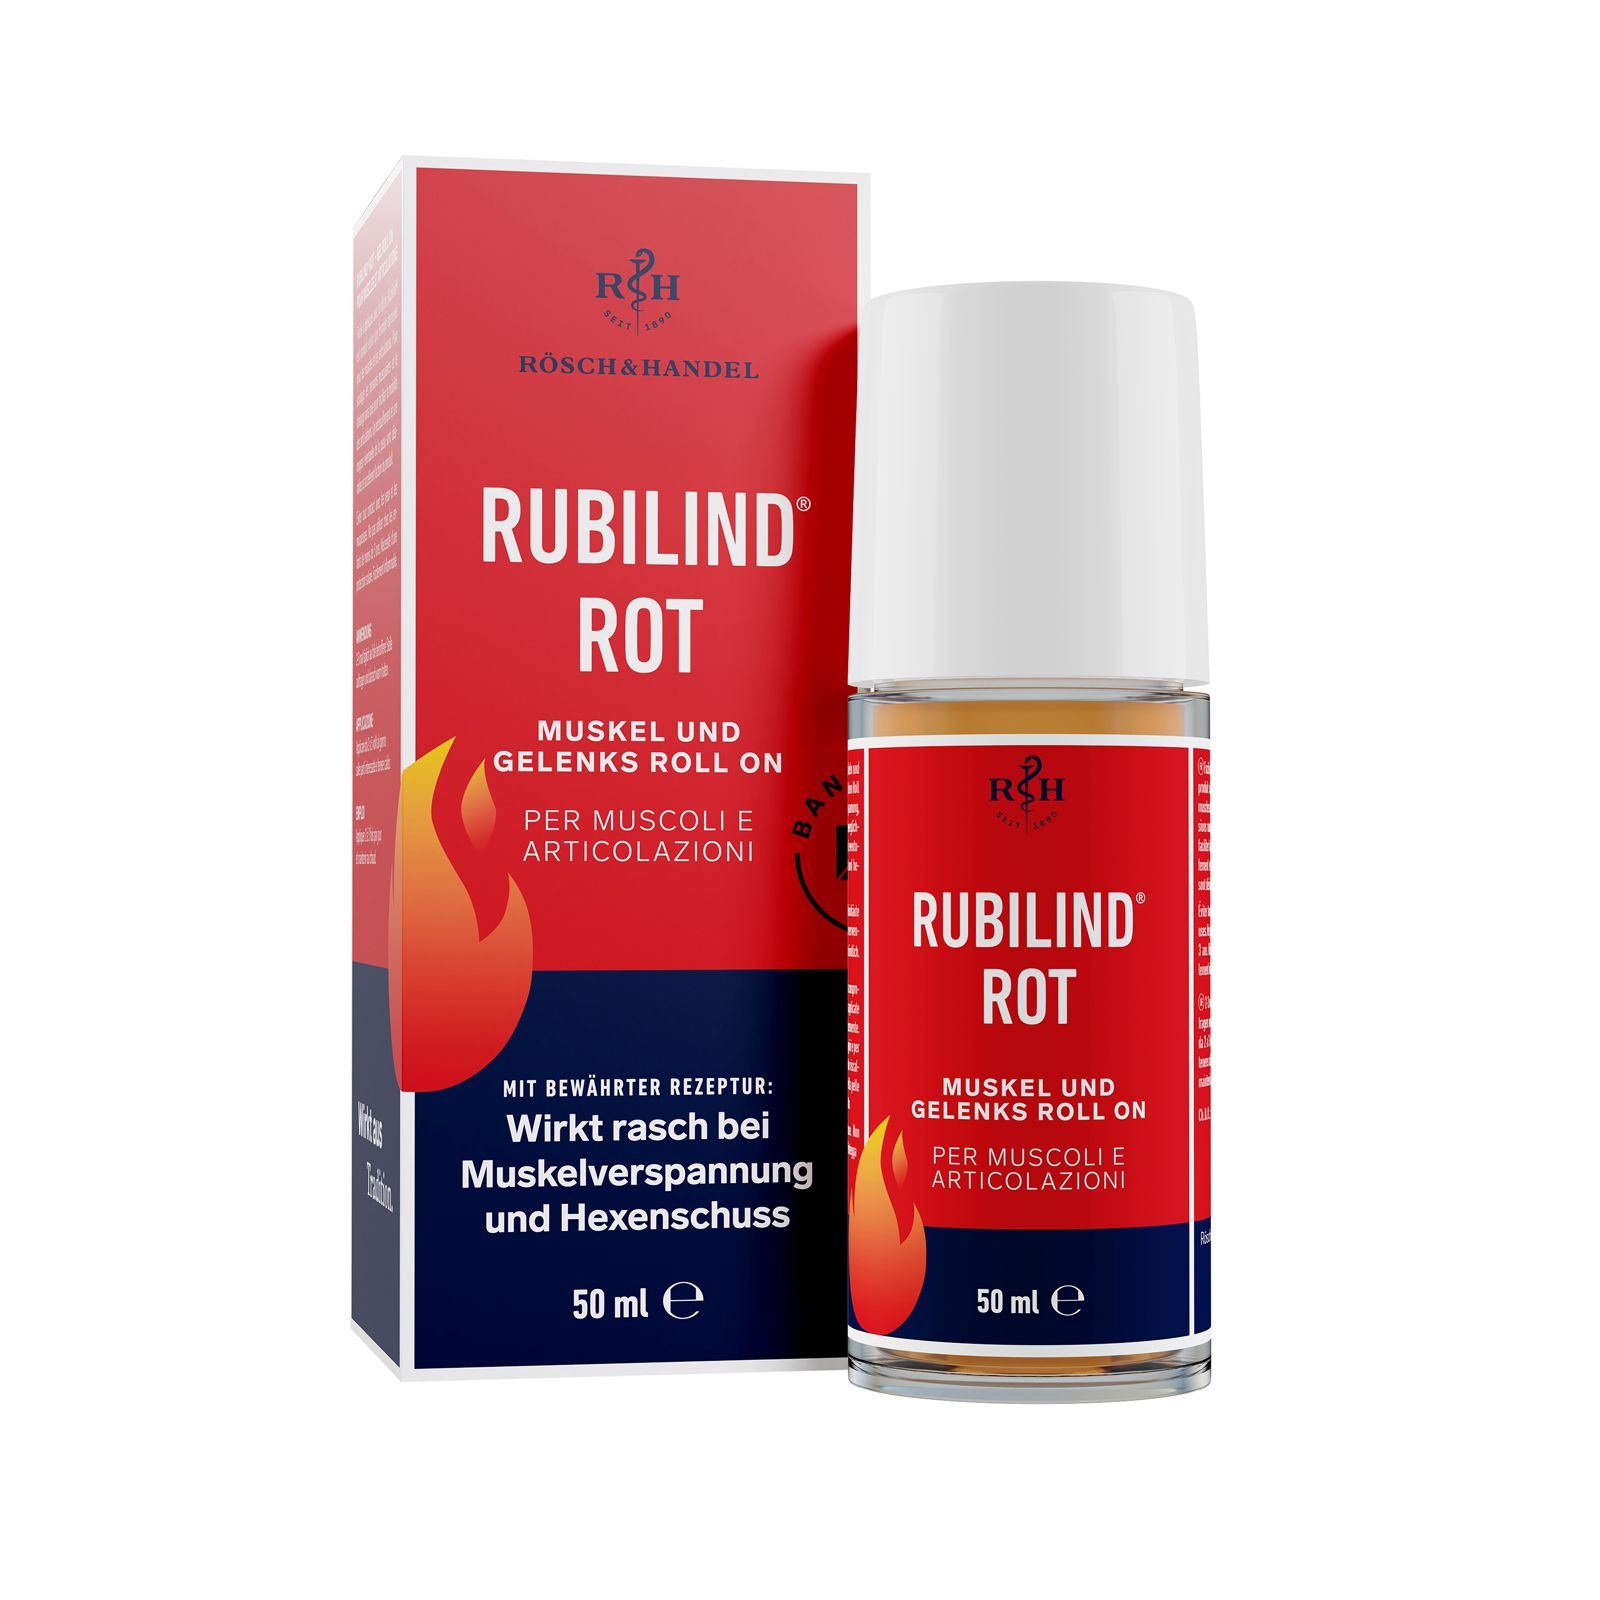 RUBILIND® Rot Muskel- und Gelenks Roll-on